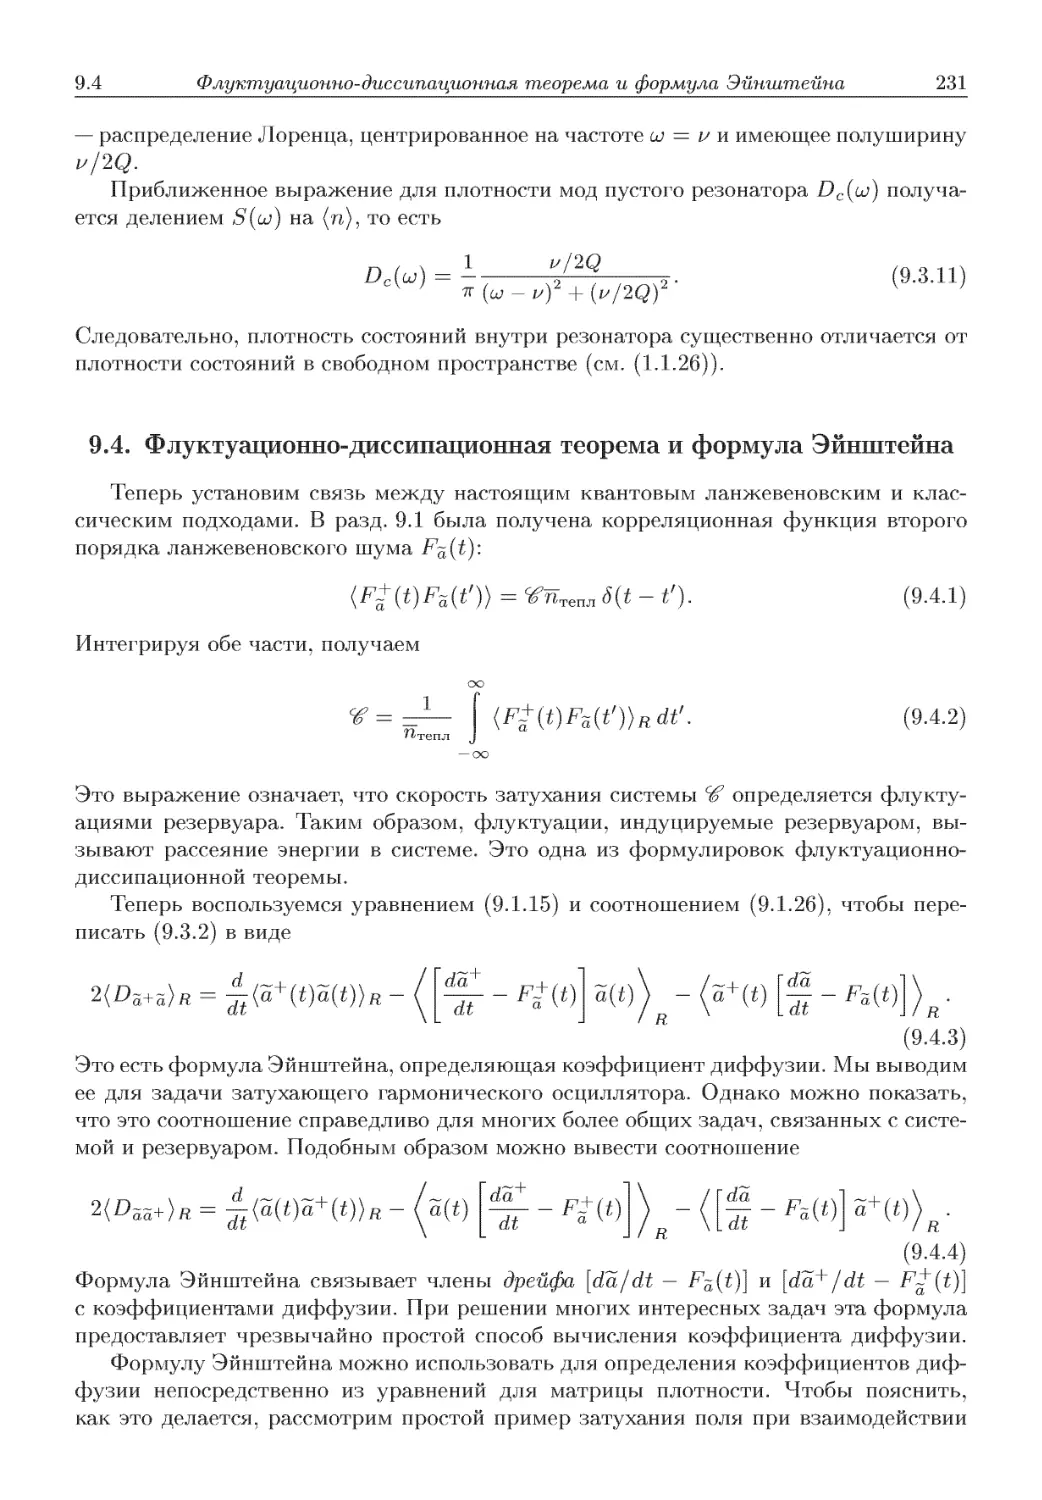 9.4. Флуктуационно-диссипационная теорема и формула Эйнштейна